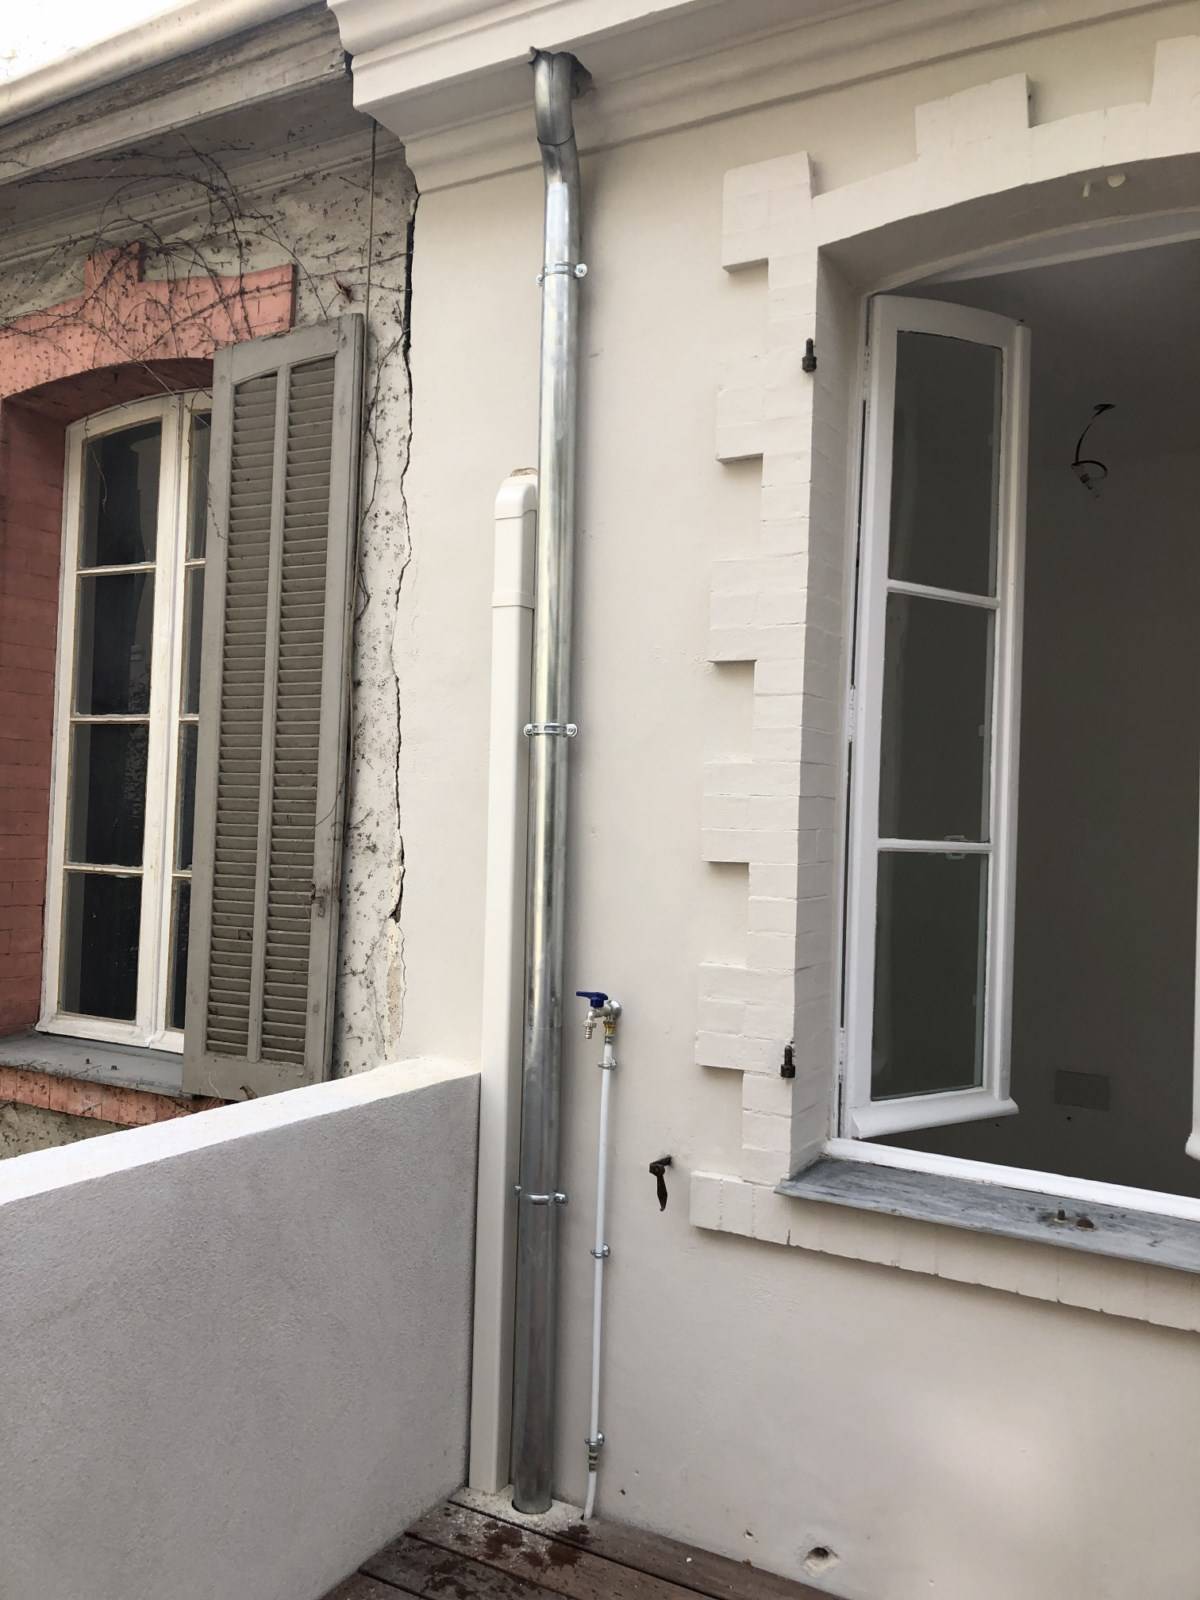 Travaux de zinguerie - Artisan couvreur zingueur pour rénovation, réparation entretien et nettoyage de toiture dans la commune Les Baux-de-Provence 13520